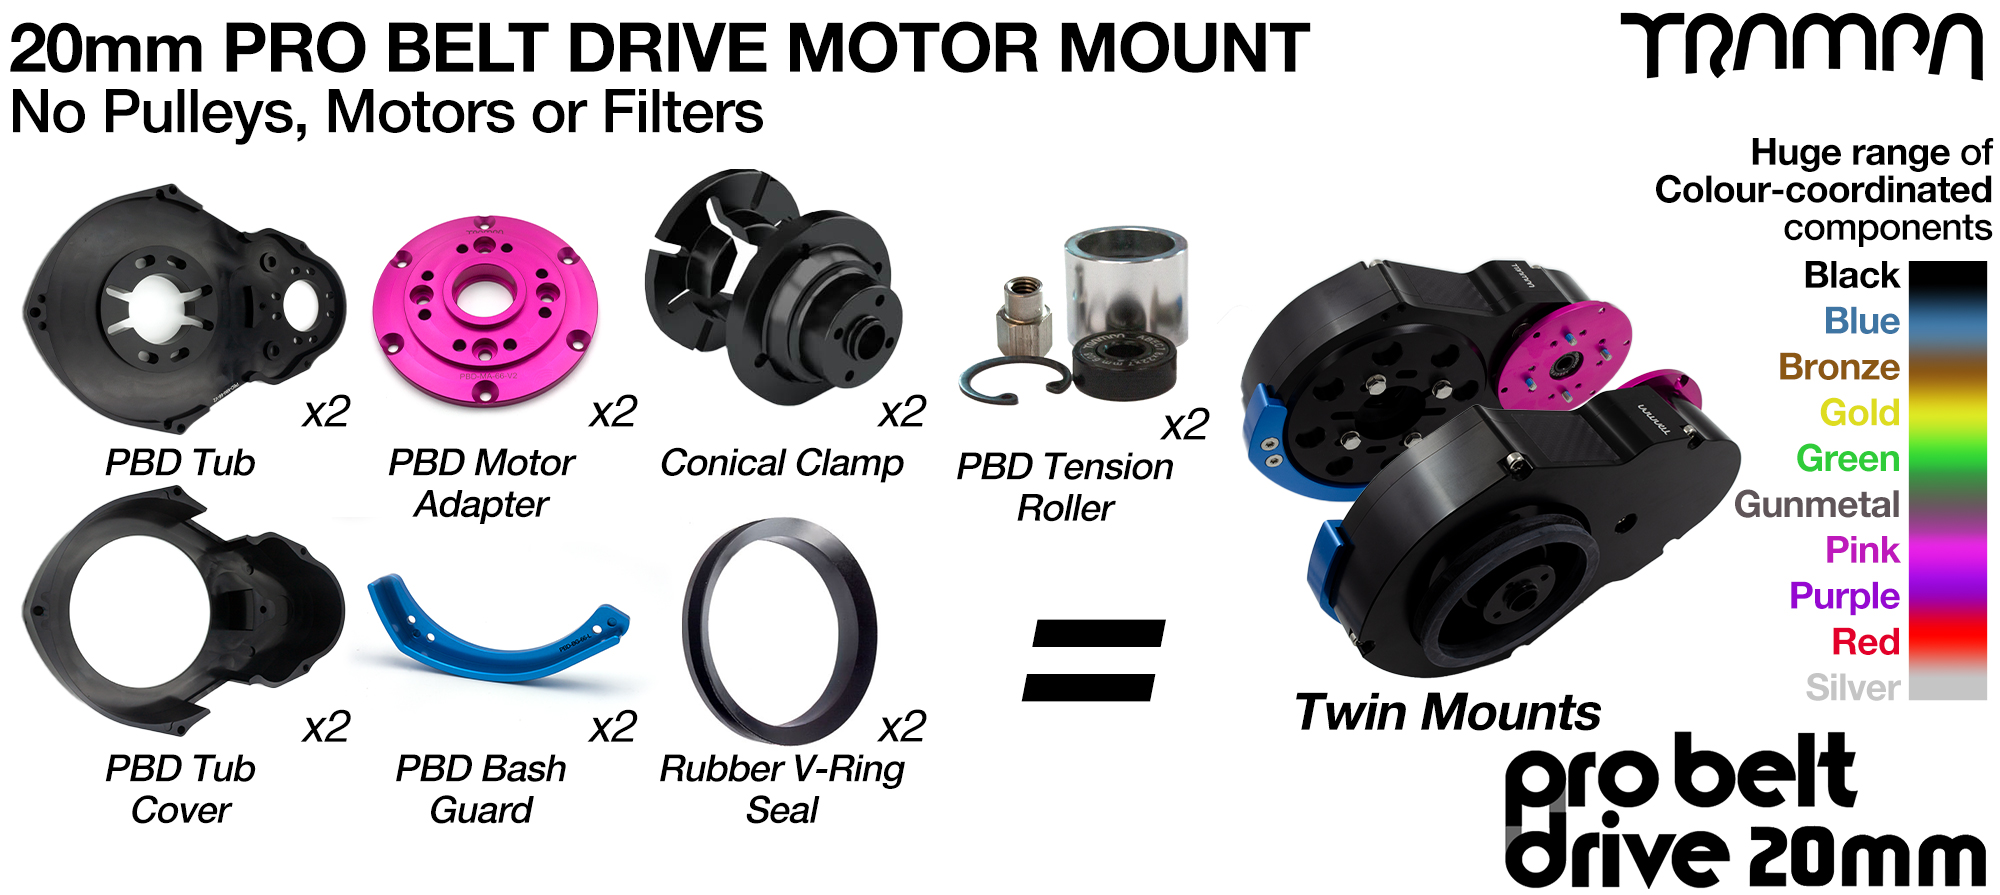 20mm PRO BELT DRIVE Motor Mounts - NO Pulleys NO Filters & NO Motors